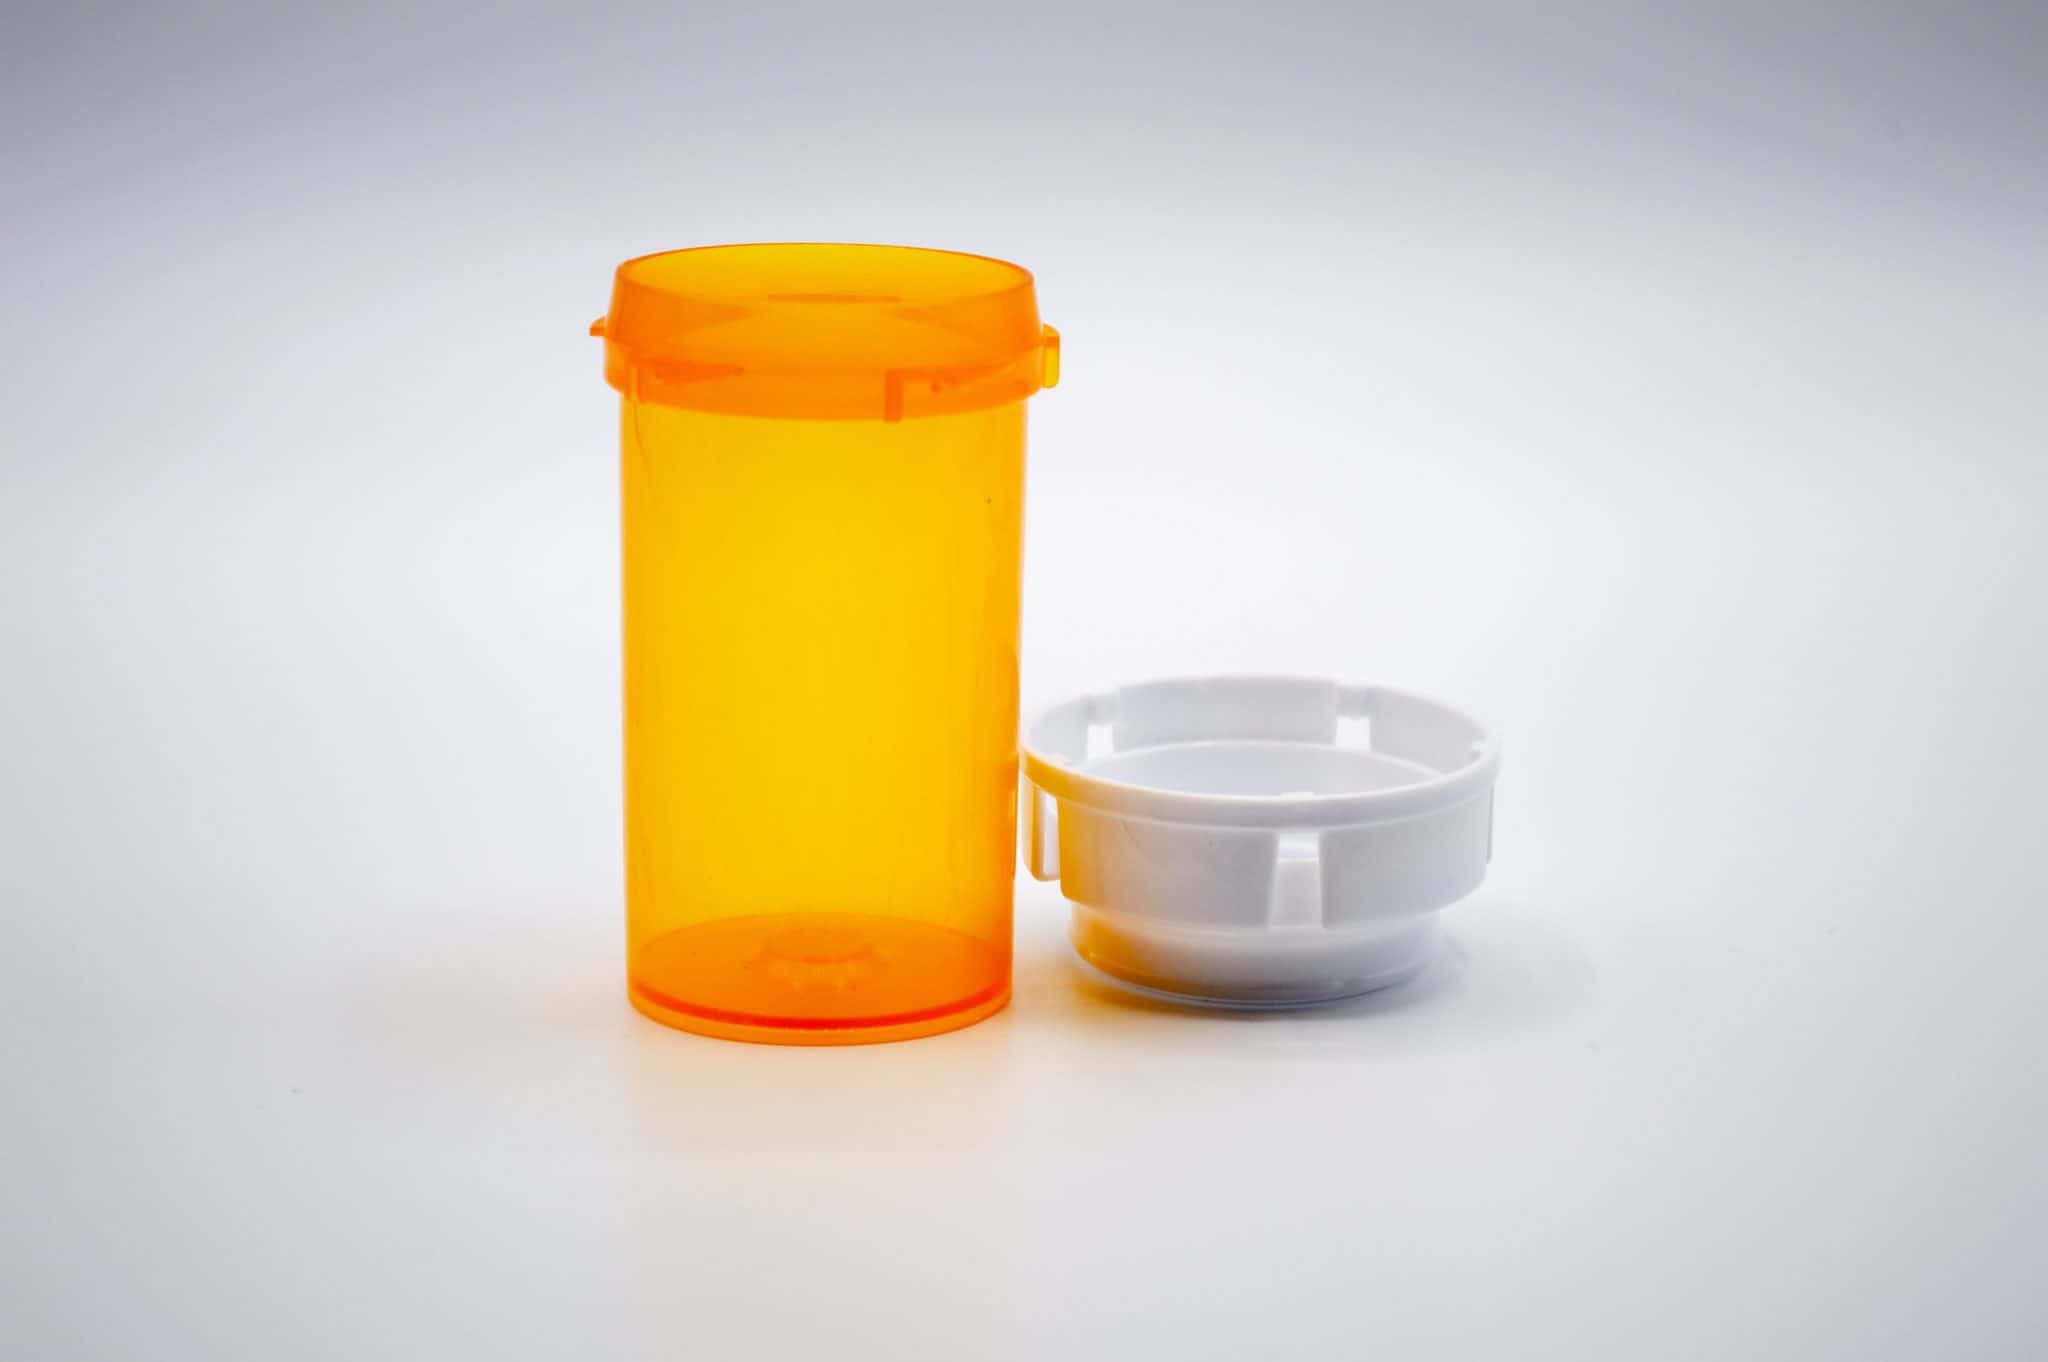 prescription-refill-rules-exceptions-emergencies-and-limits